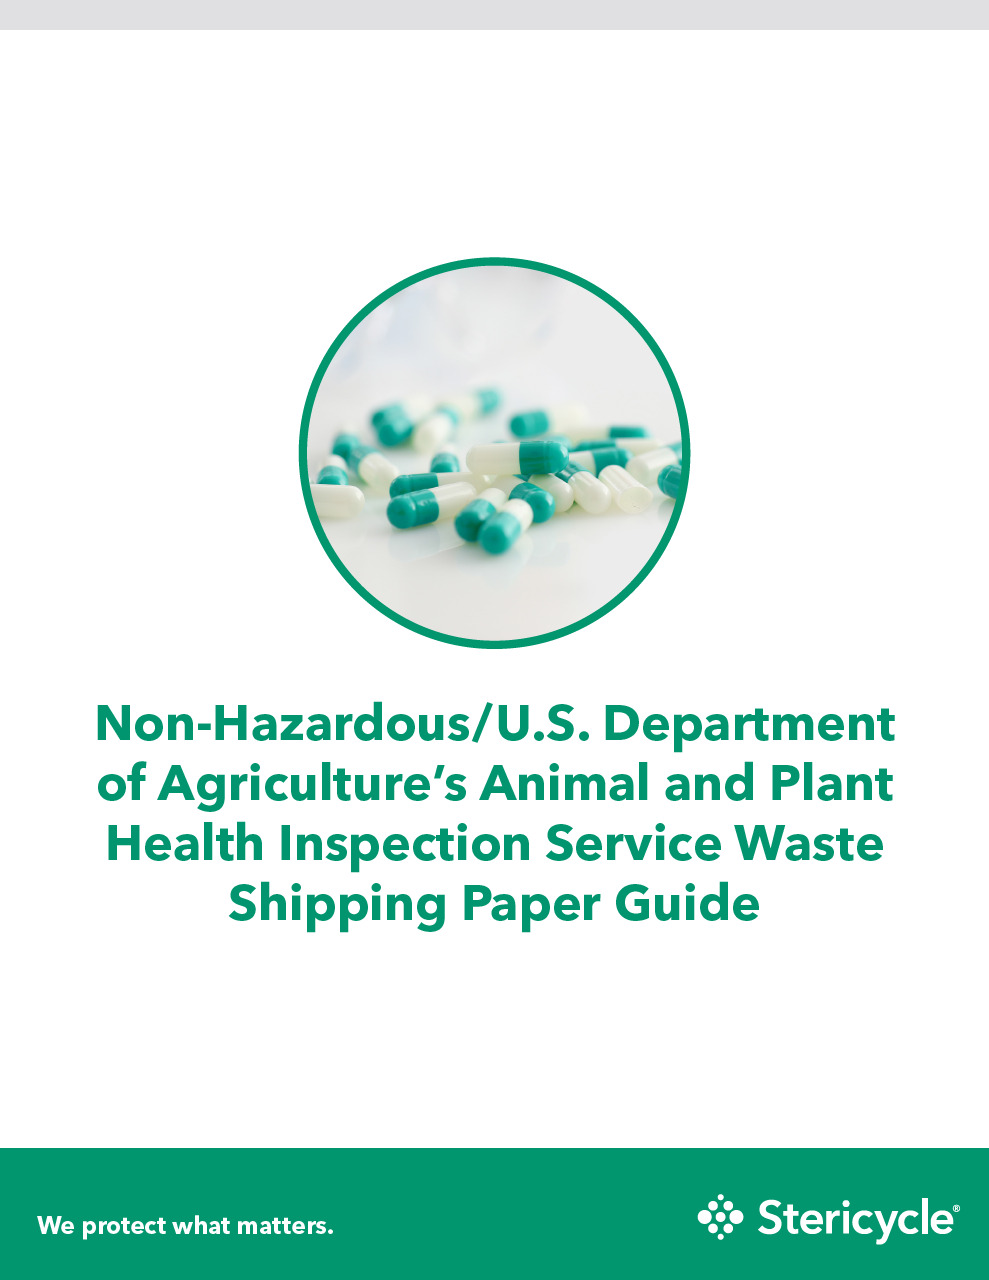 Non-Hazardous-Shipping-Paper-Guide_2018-06.pdf